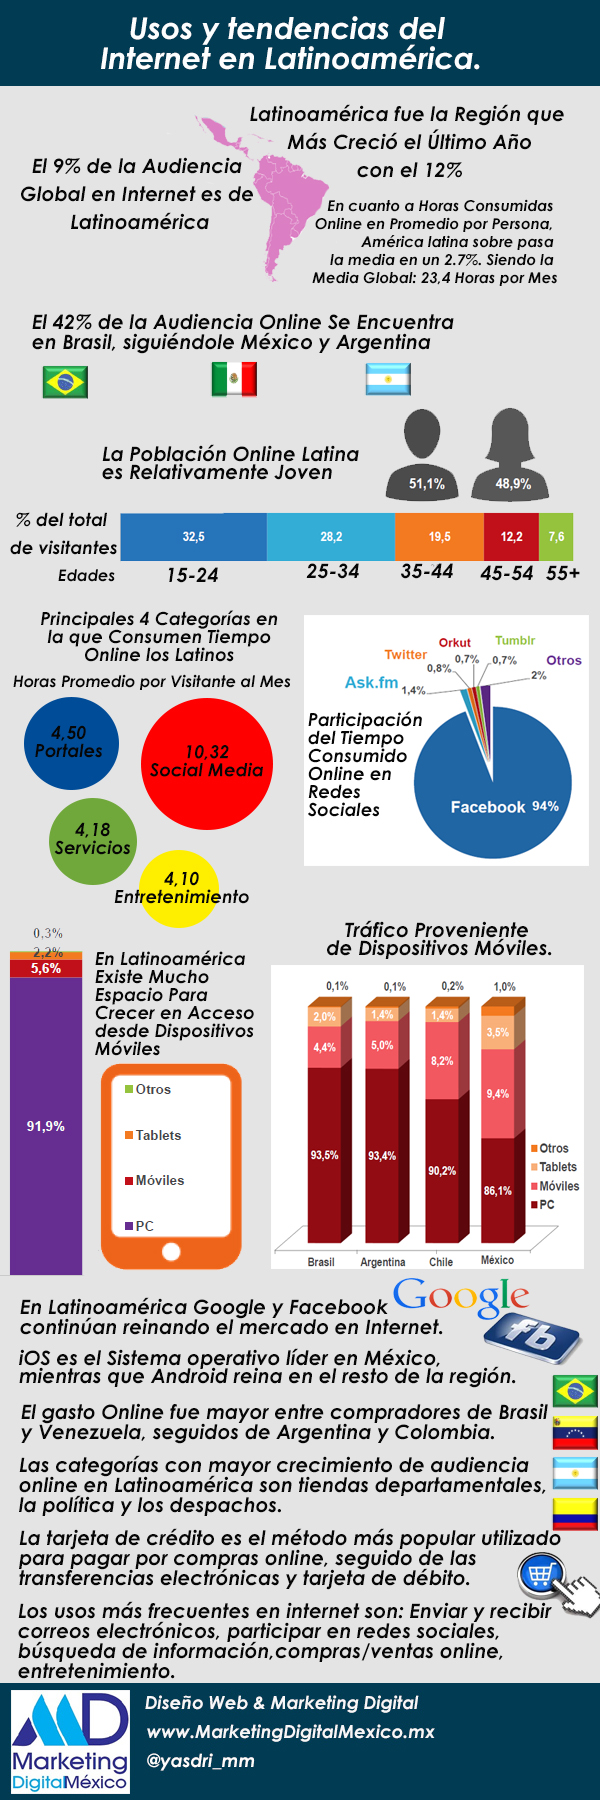 Usos-y-tendencias-del-internet-en-Latinoamerica